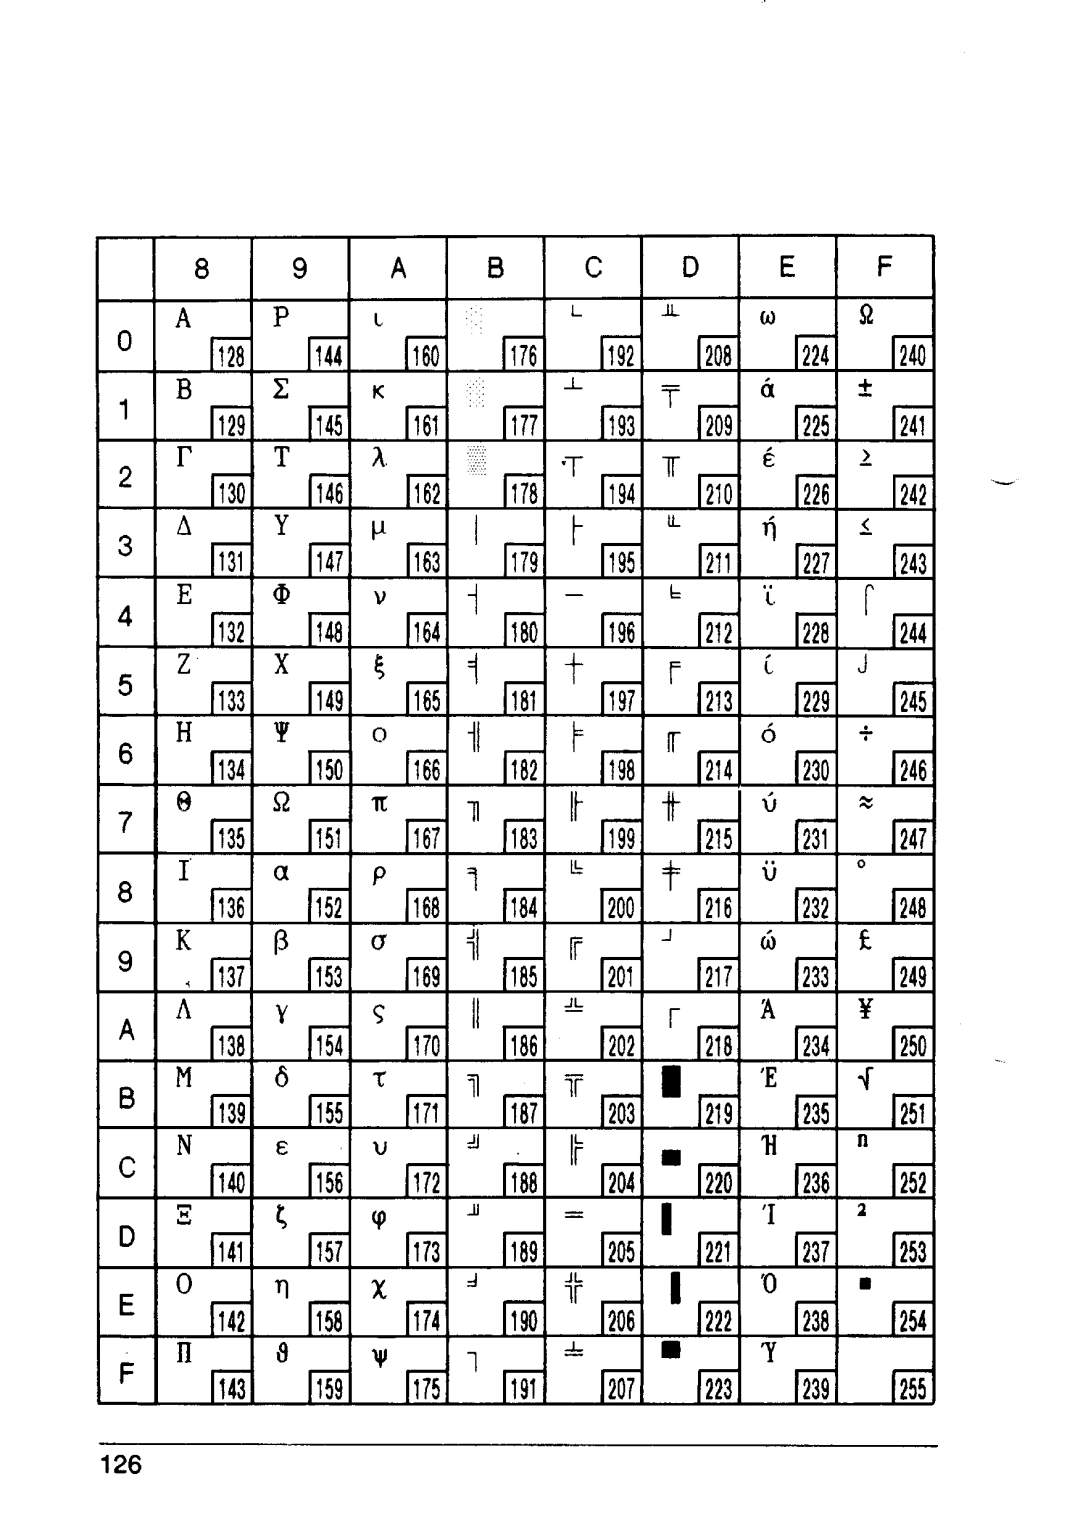 Star Micronics XB24-10, XB24-15 user manual 1129, l-iii, list, 1177, 1193~, 1209, 1225~, 1241, 1146, 1162, 1178, 1226, 1242 